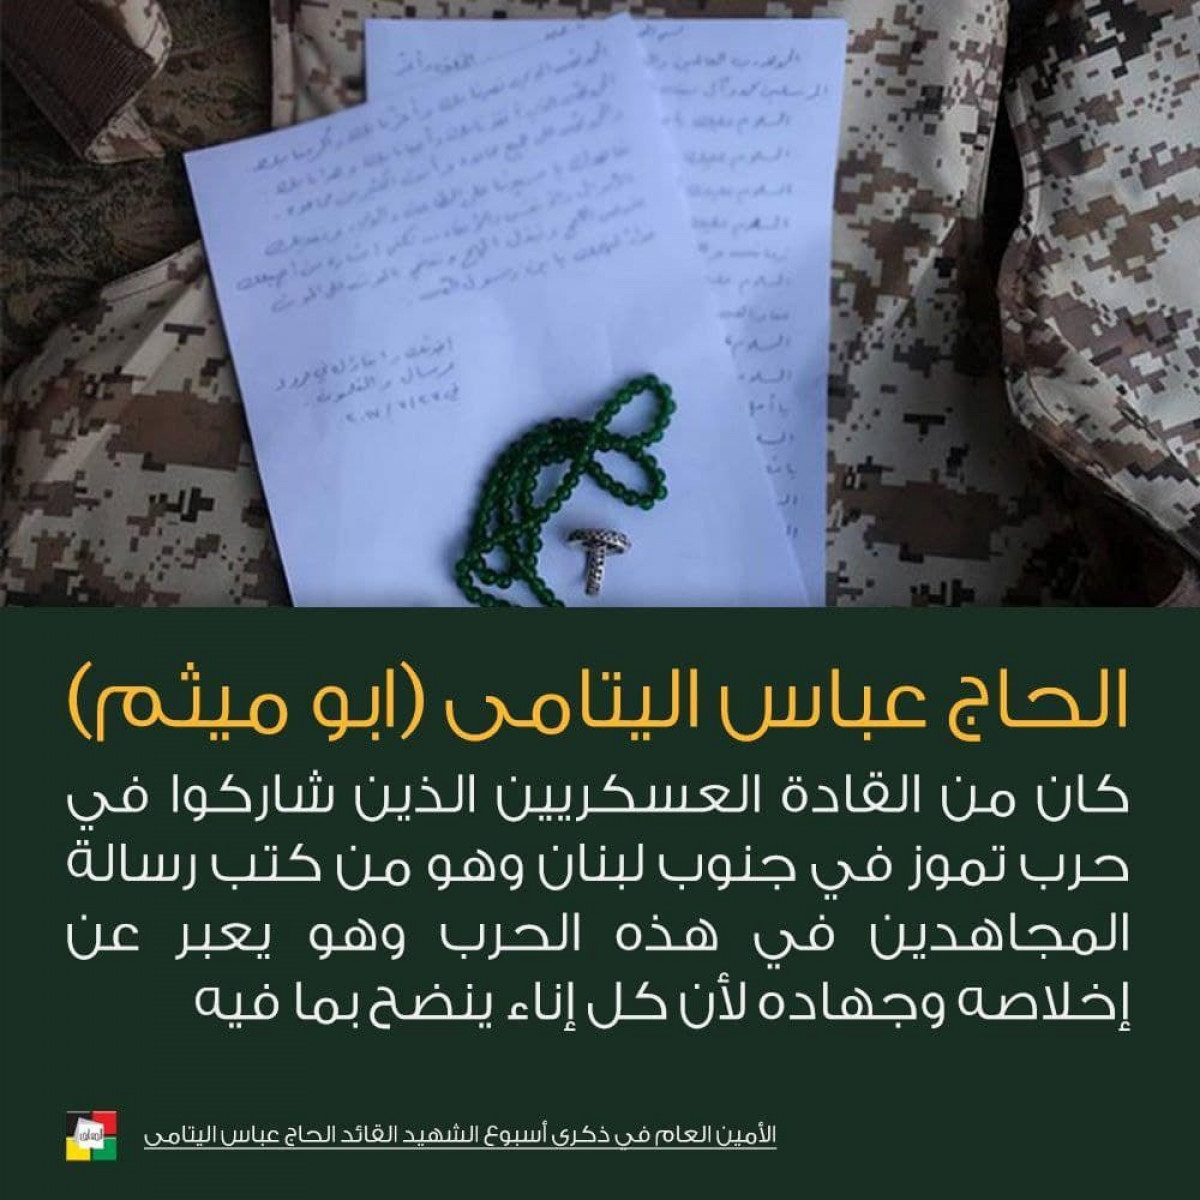 الحاج عباس اليتامى هو من كتب رسالة المجاهدين في الحرب تموز